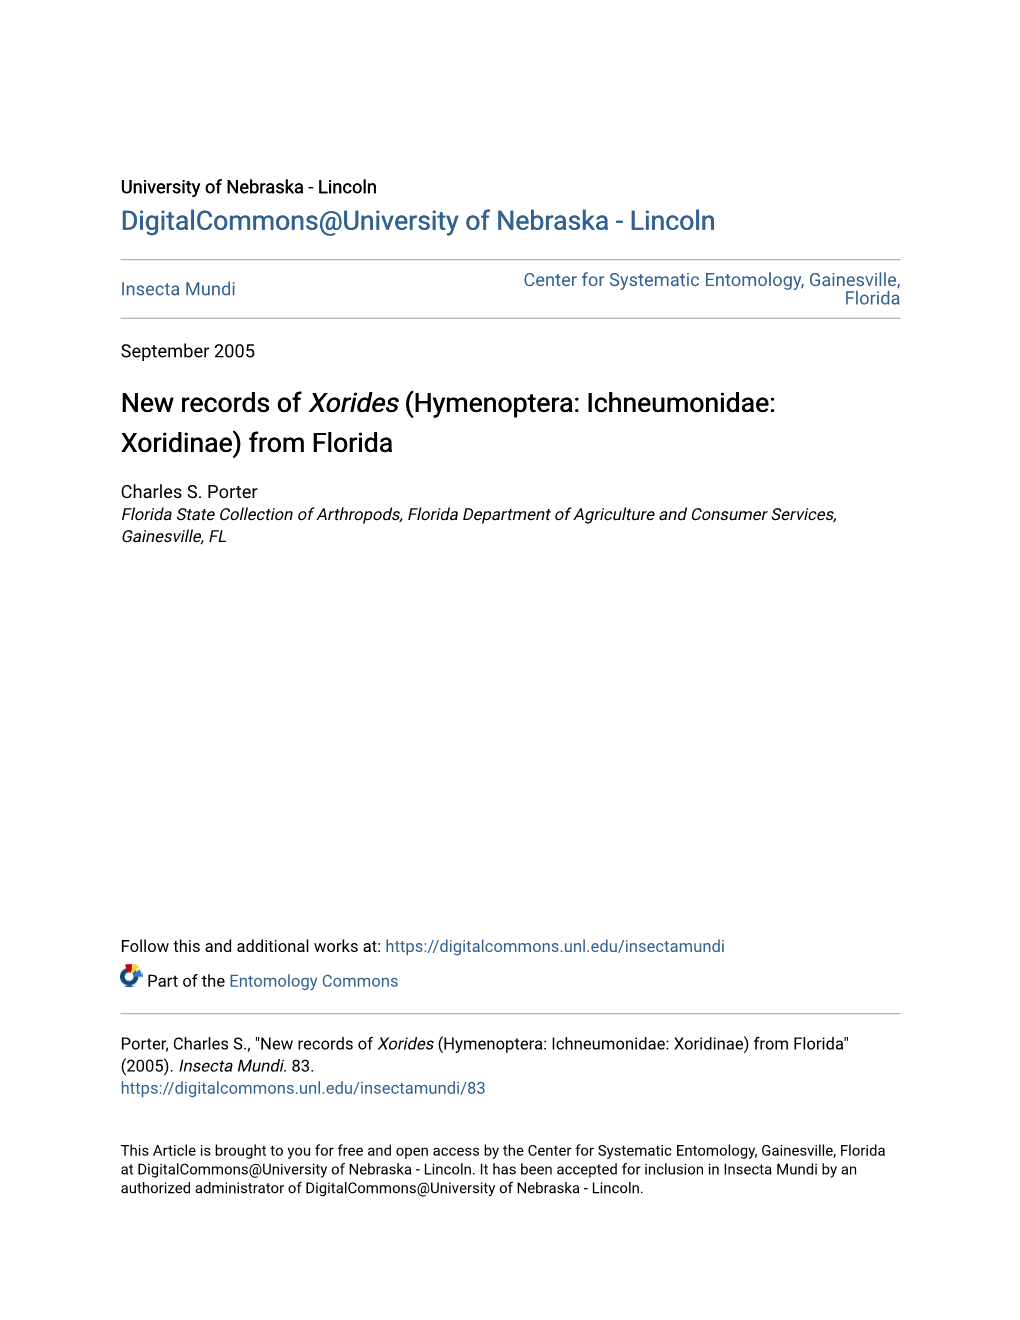 New Records of Xorides (Hymenoptera: Ichneumonidae: Xoridinae) from Florida